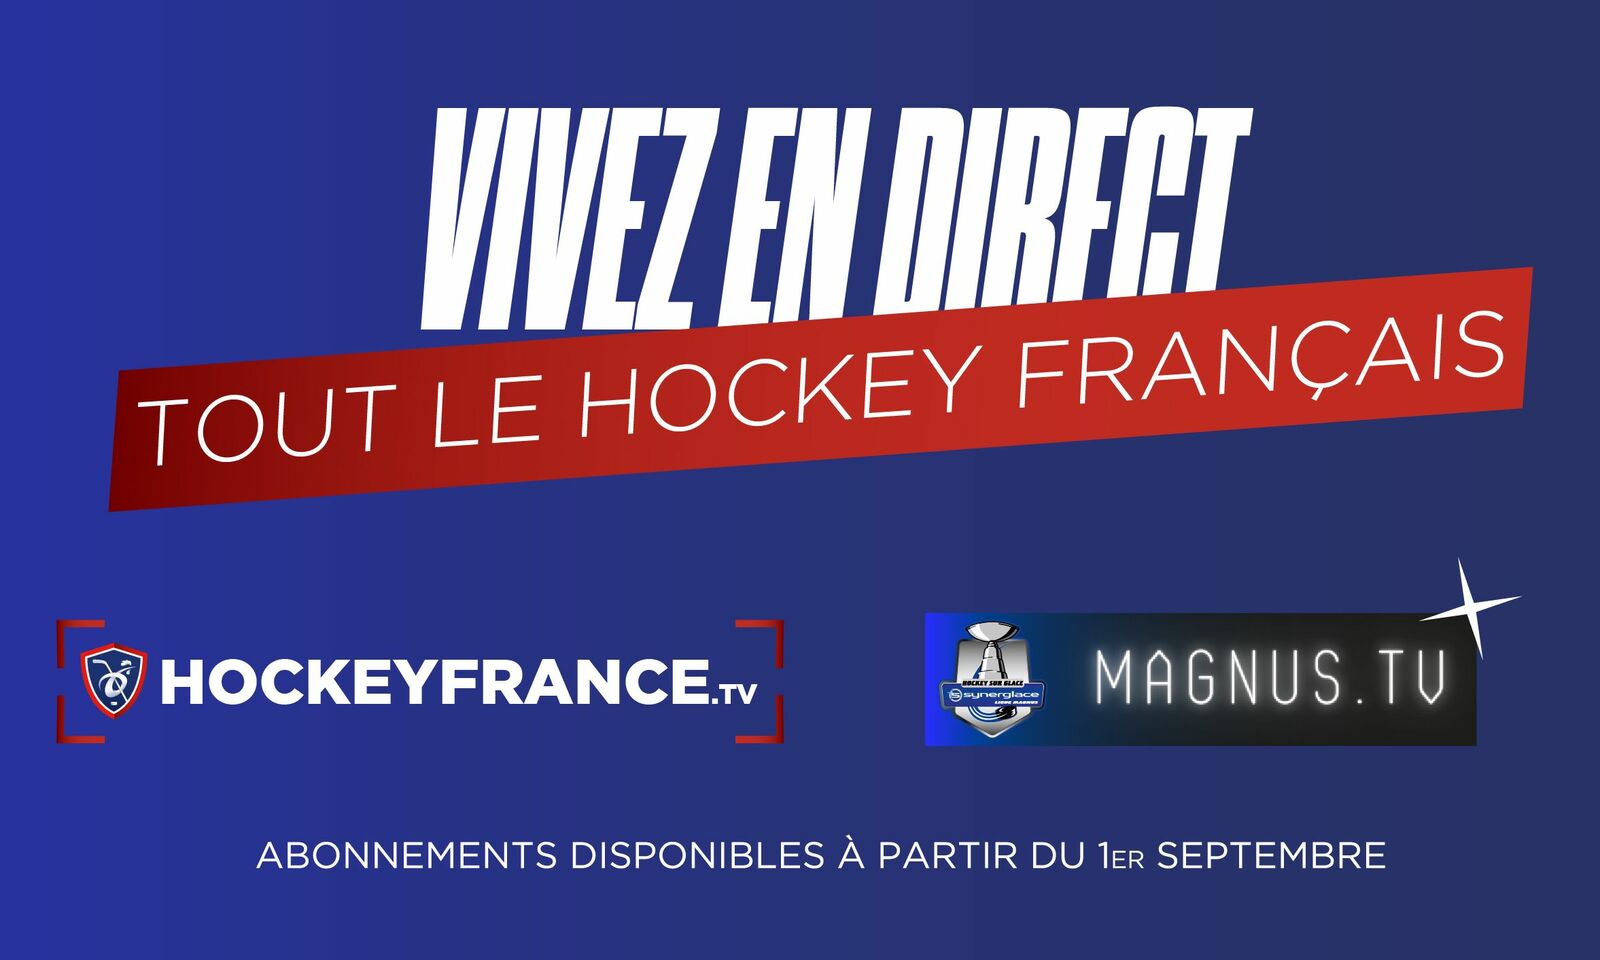 Vivez en direct TOUT le Hockey français ! 